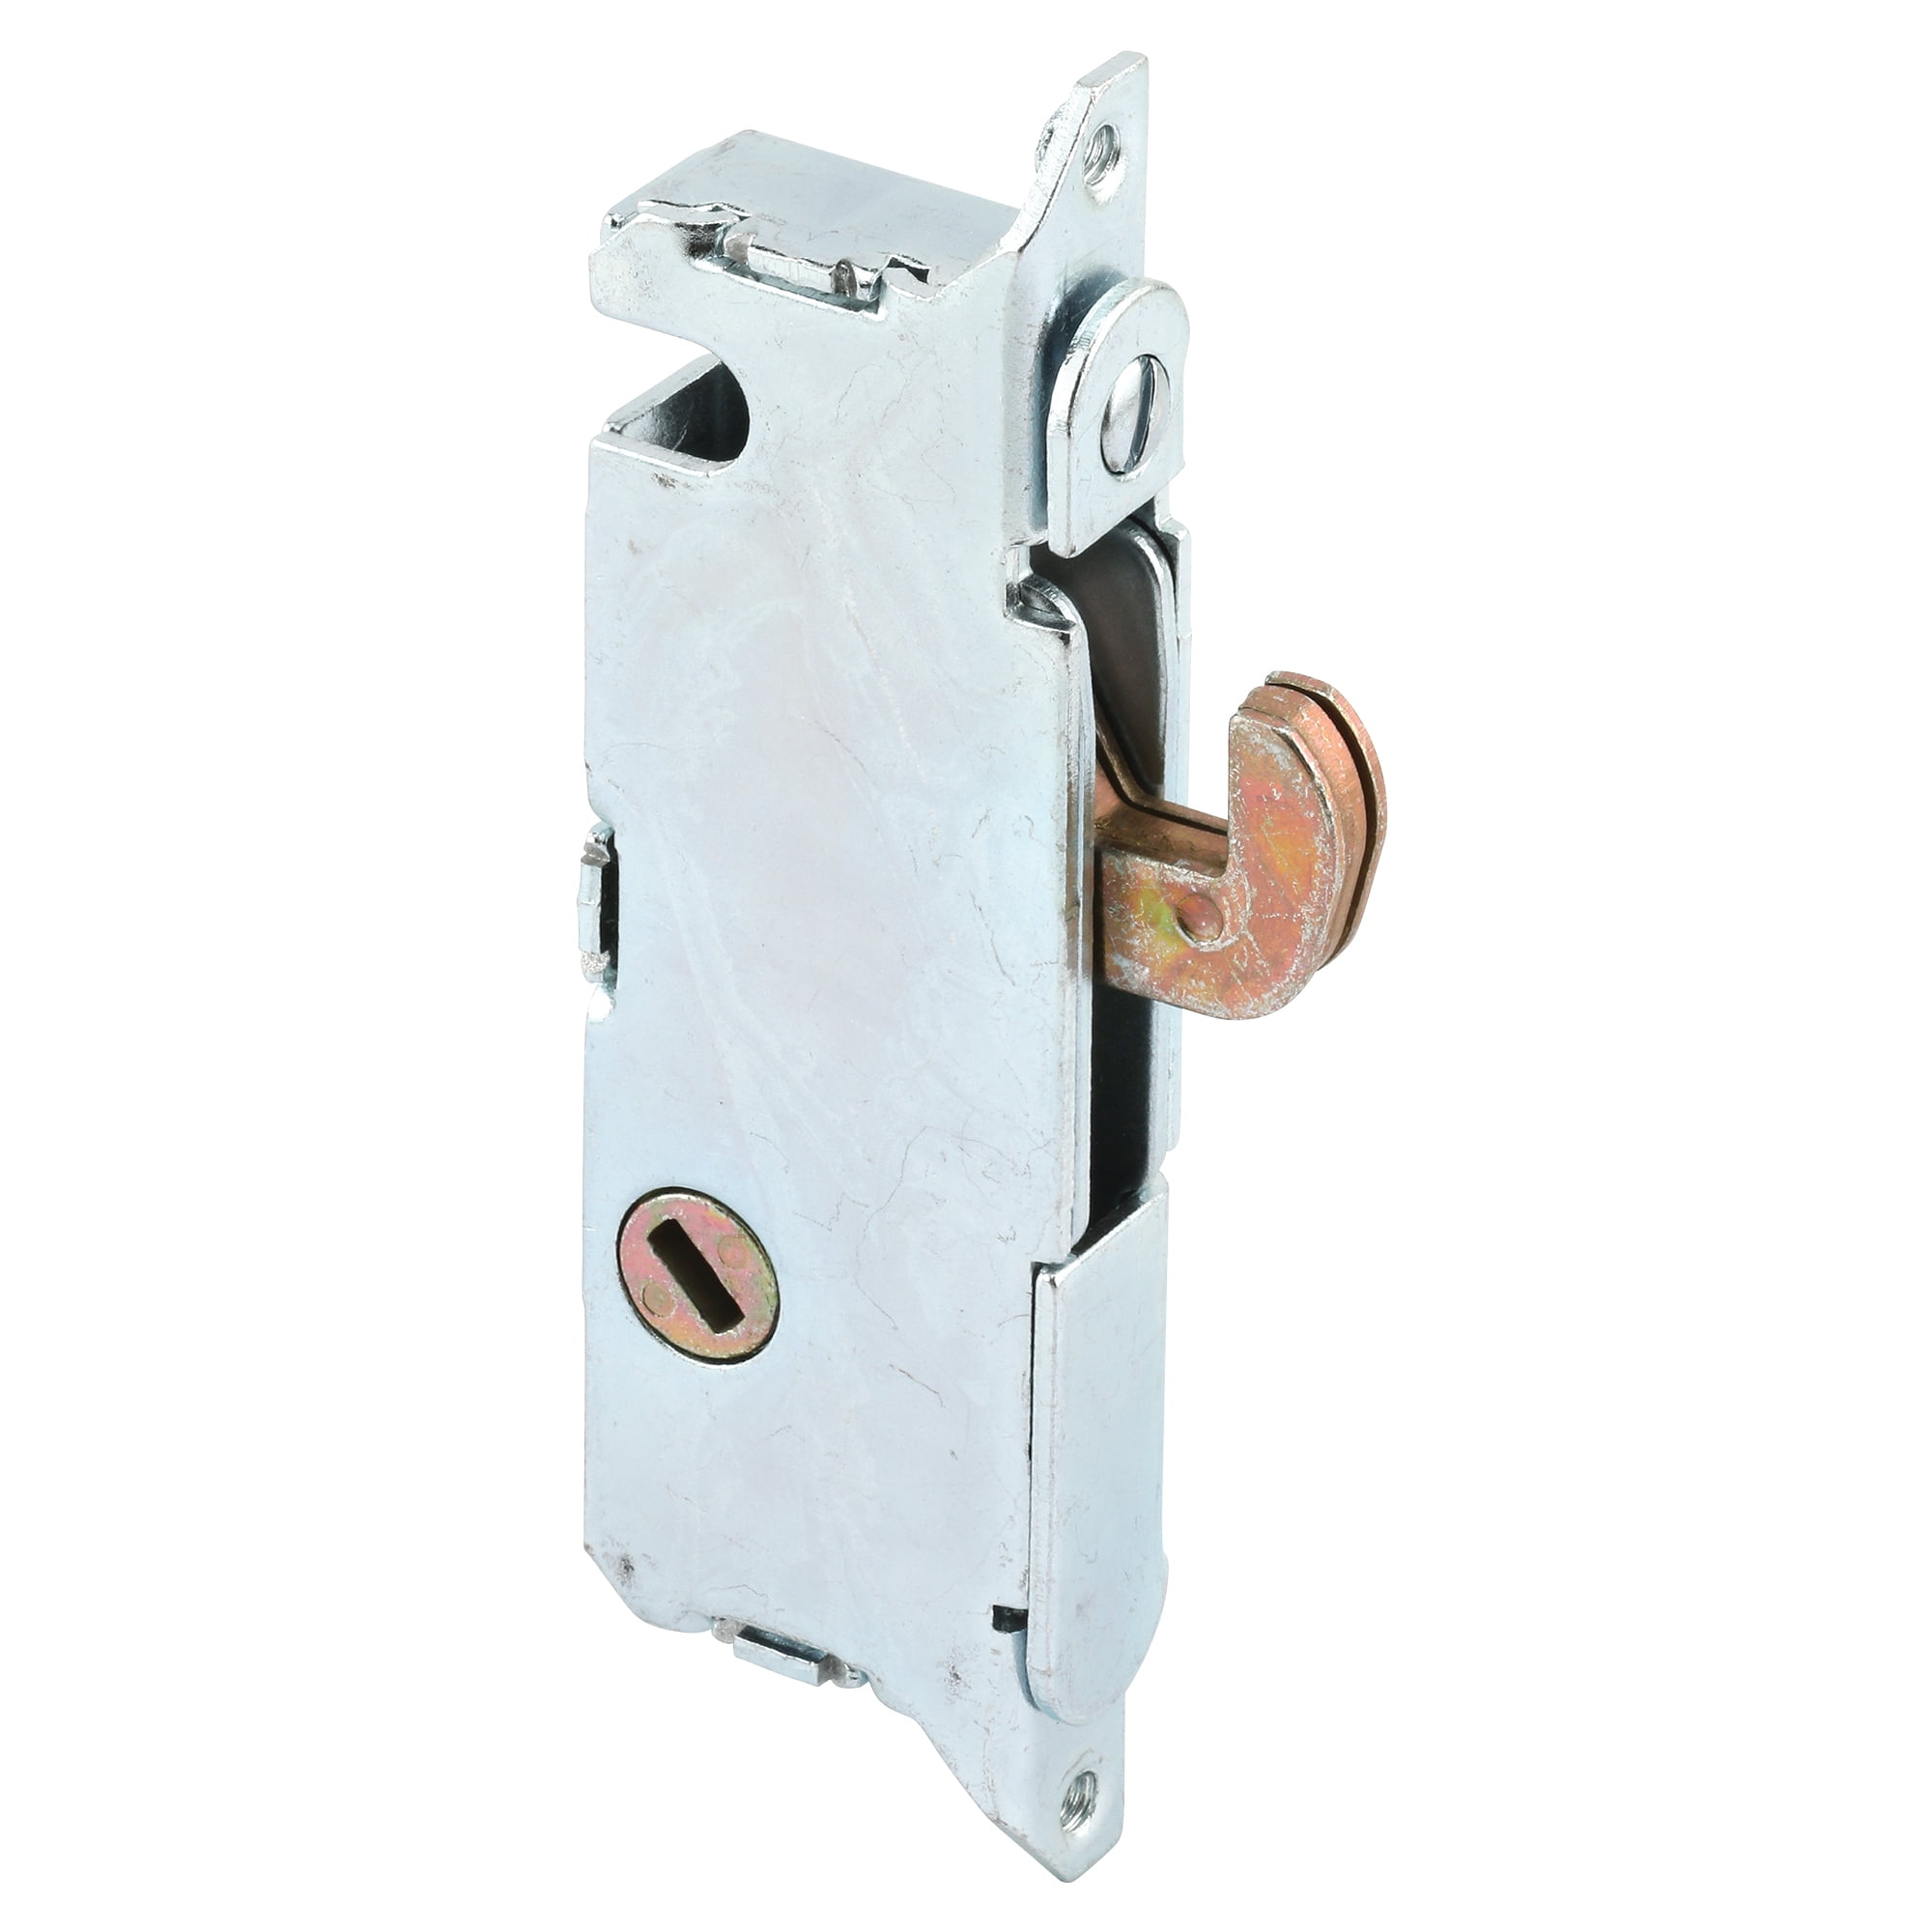 3 key US Stainless Steel Security LOCK Entry Mortise Lever Handle Door Lock Set 